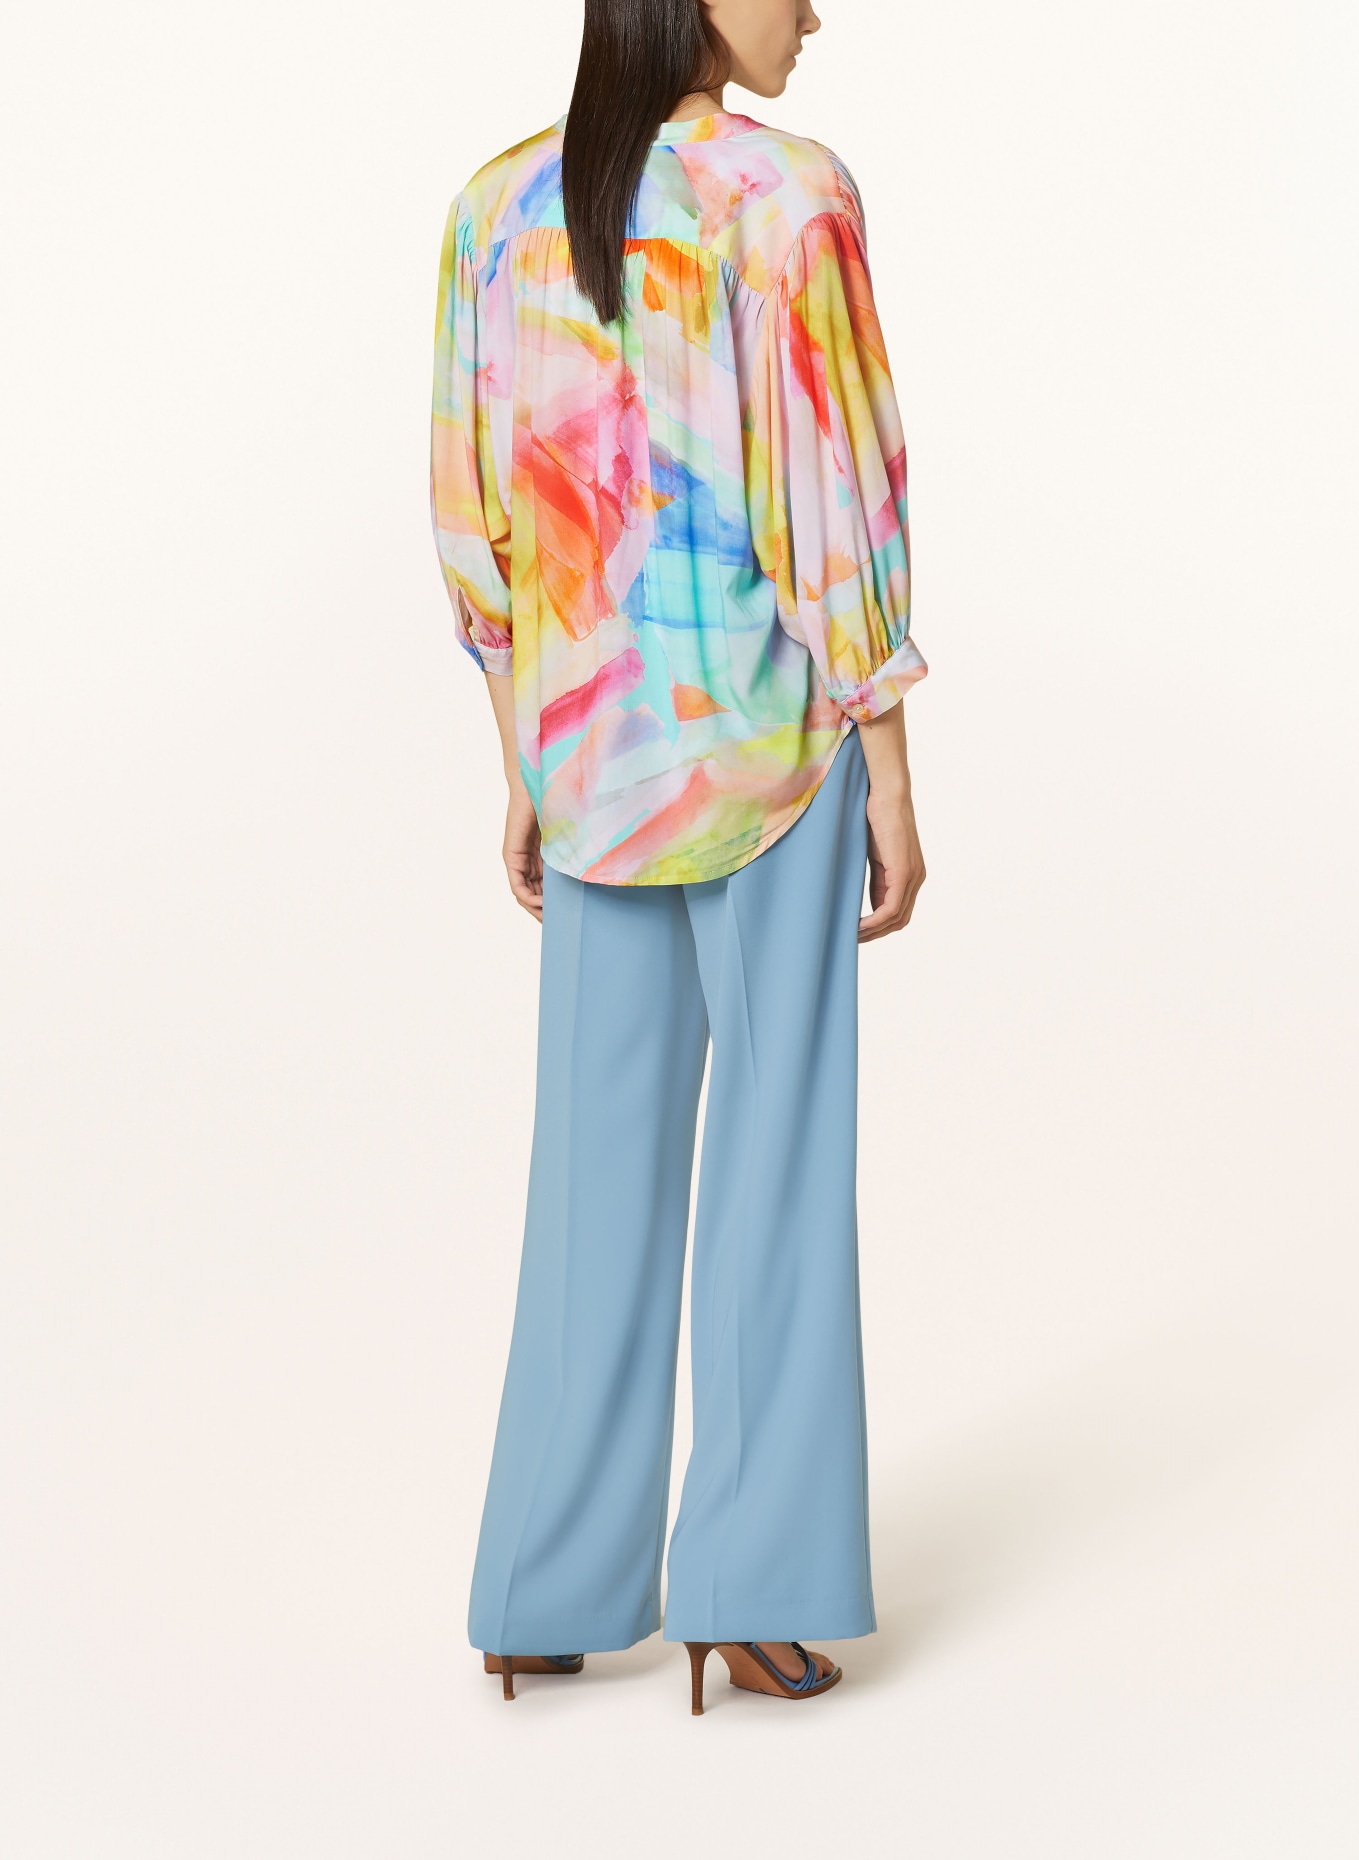 Emily VAN DEN BERGH Bluse mit 3/4-Arm, Farbe: GELB/ ORANGE/ BLAU (Bild 3)